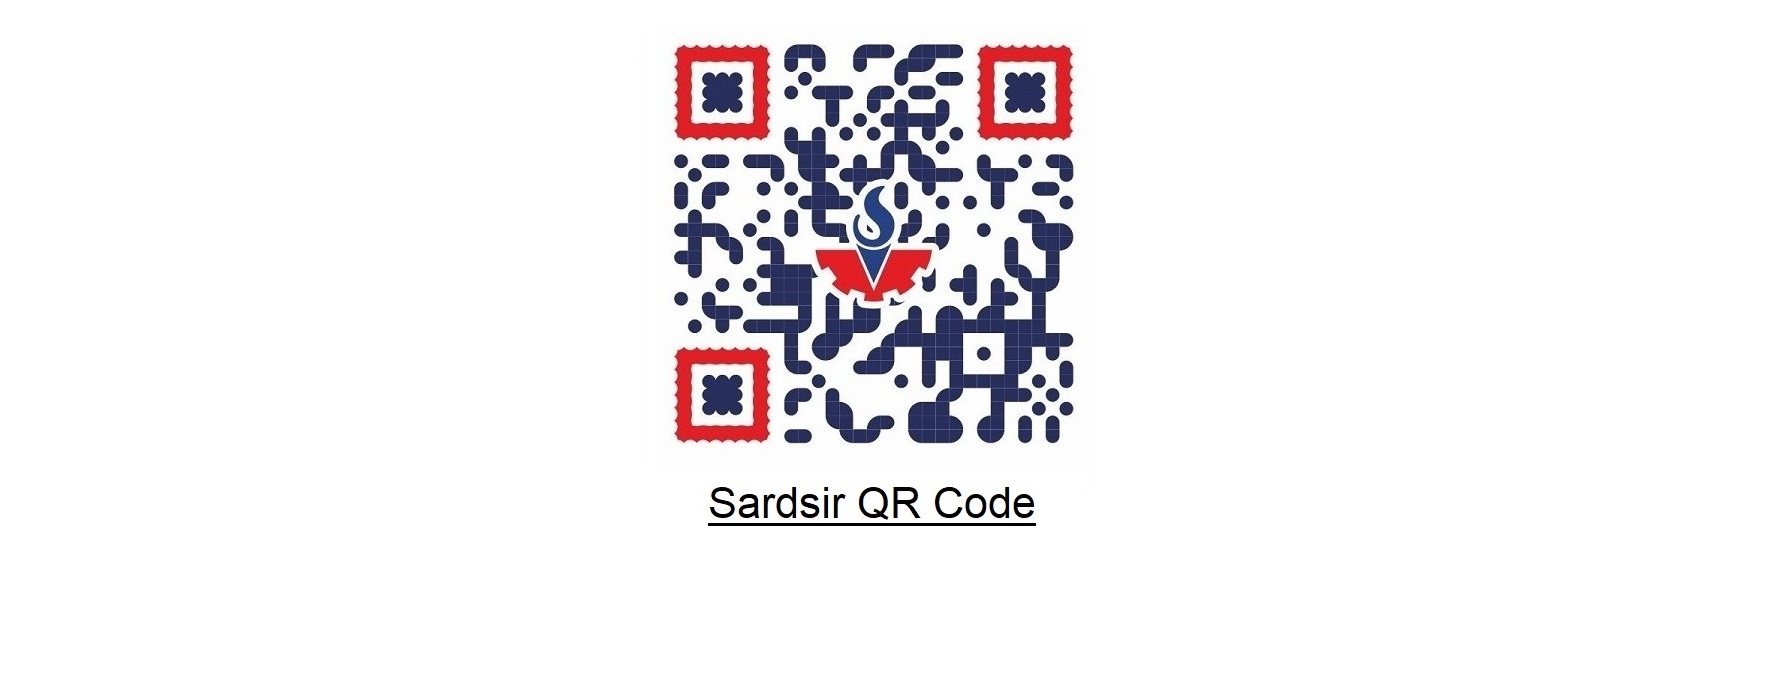 Sardsir QR Code